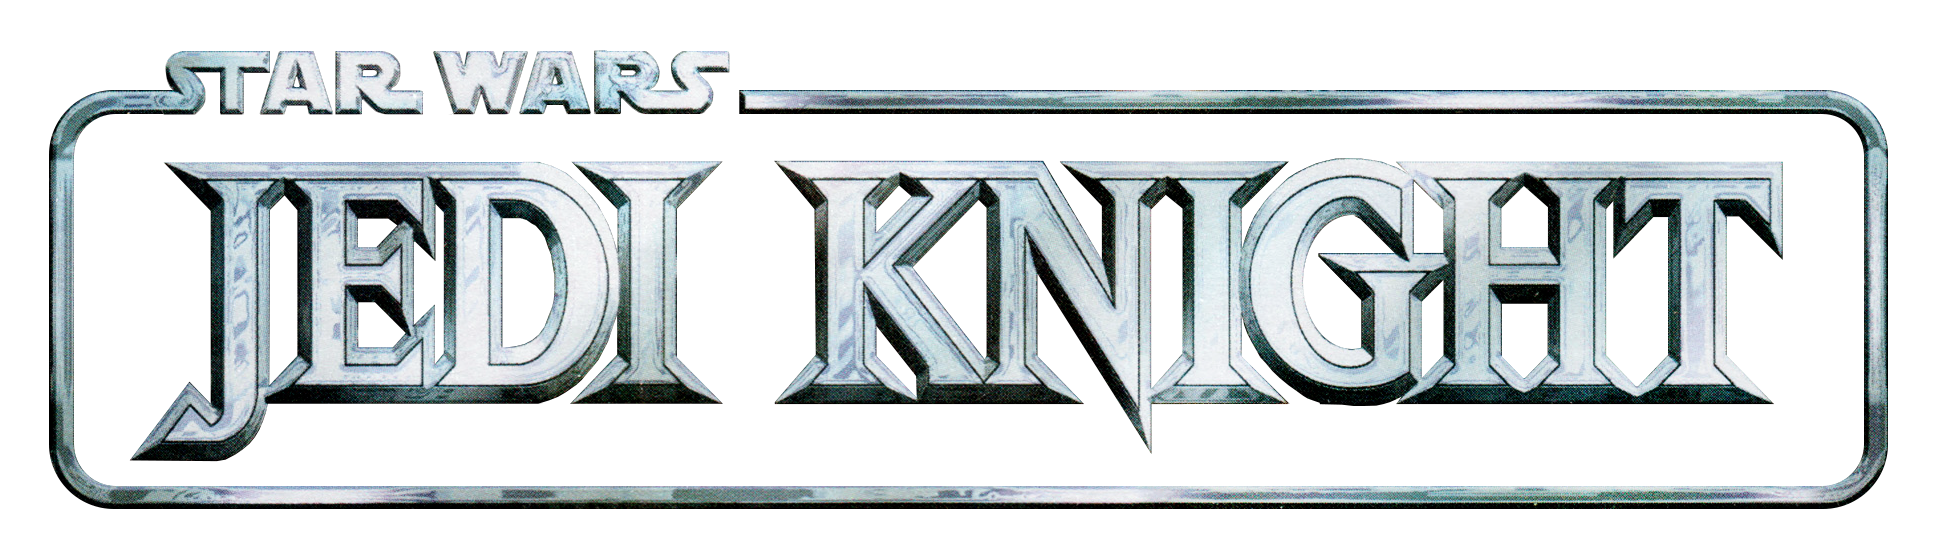 jedi knight logo